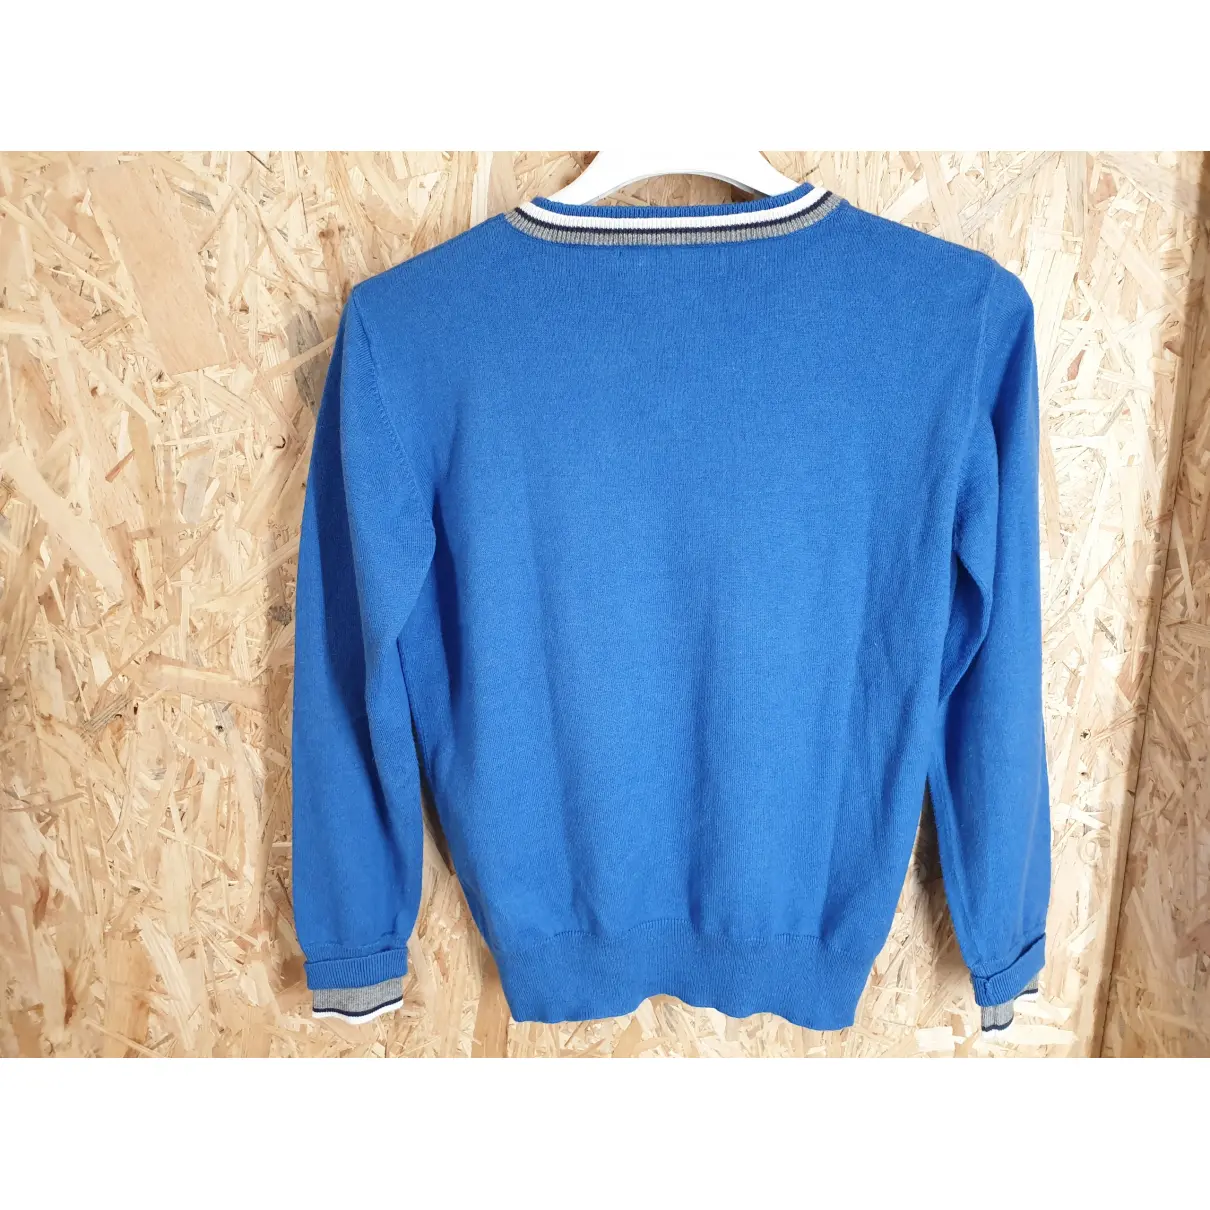 Buy Blue Bay Sweater online